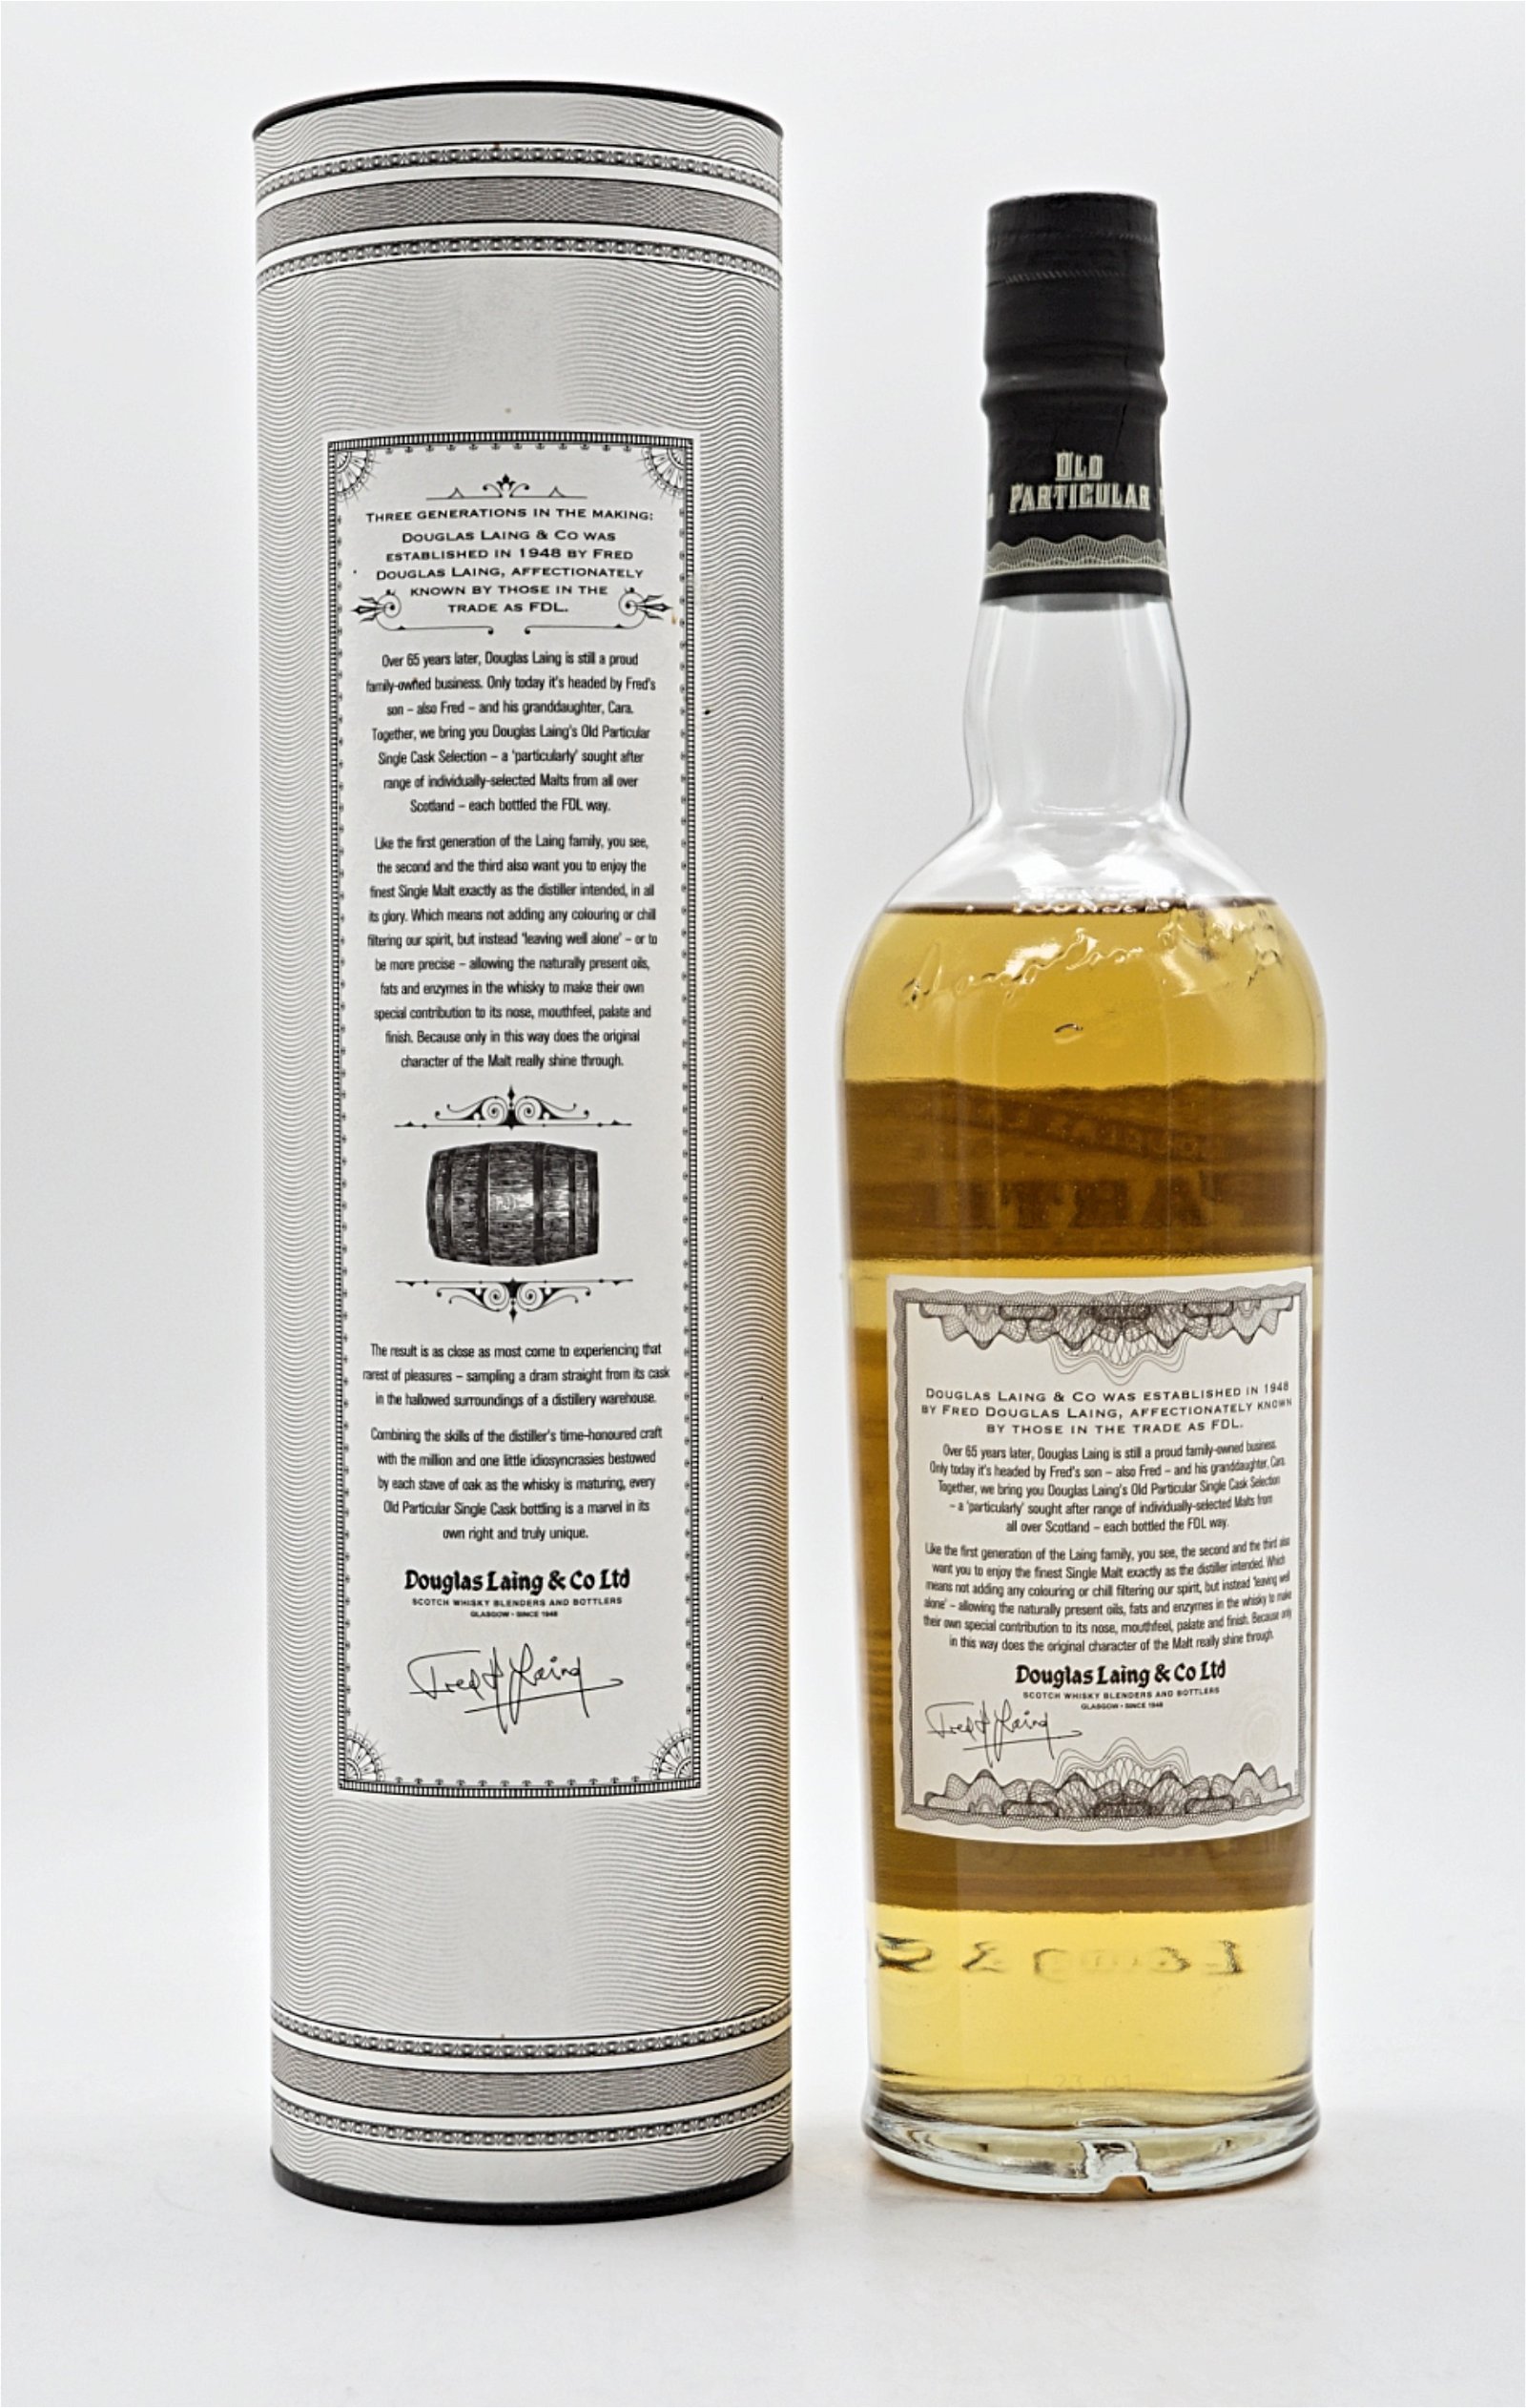 Old Particular Auchentoshan Distillery 16 Jahre 1997/2014 48,4% 357 Fl. Single Cask Single Malt Scotch Whisky